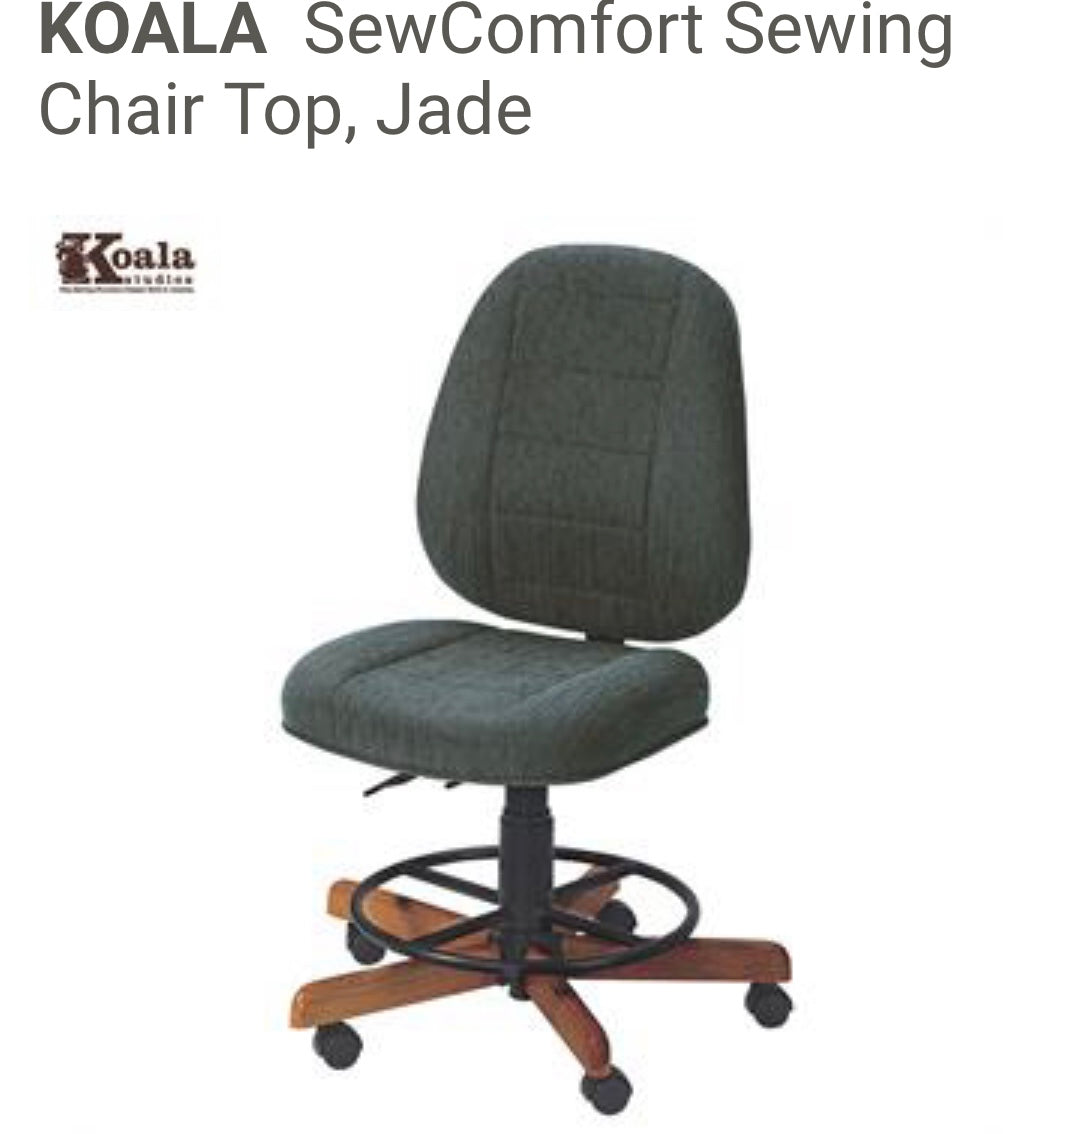 SewComfort Sewing Chair - Jade